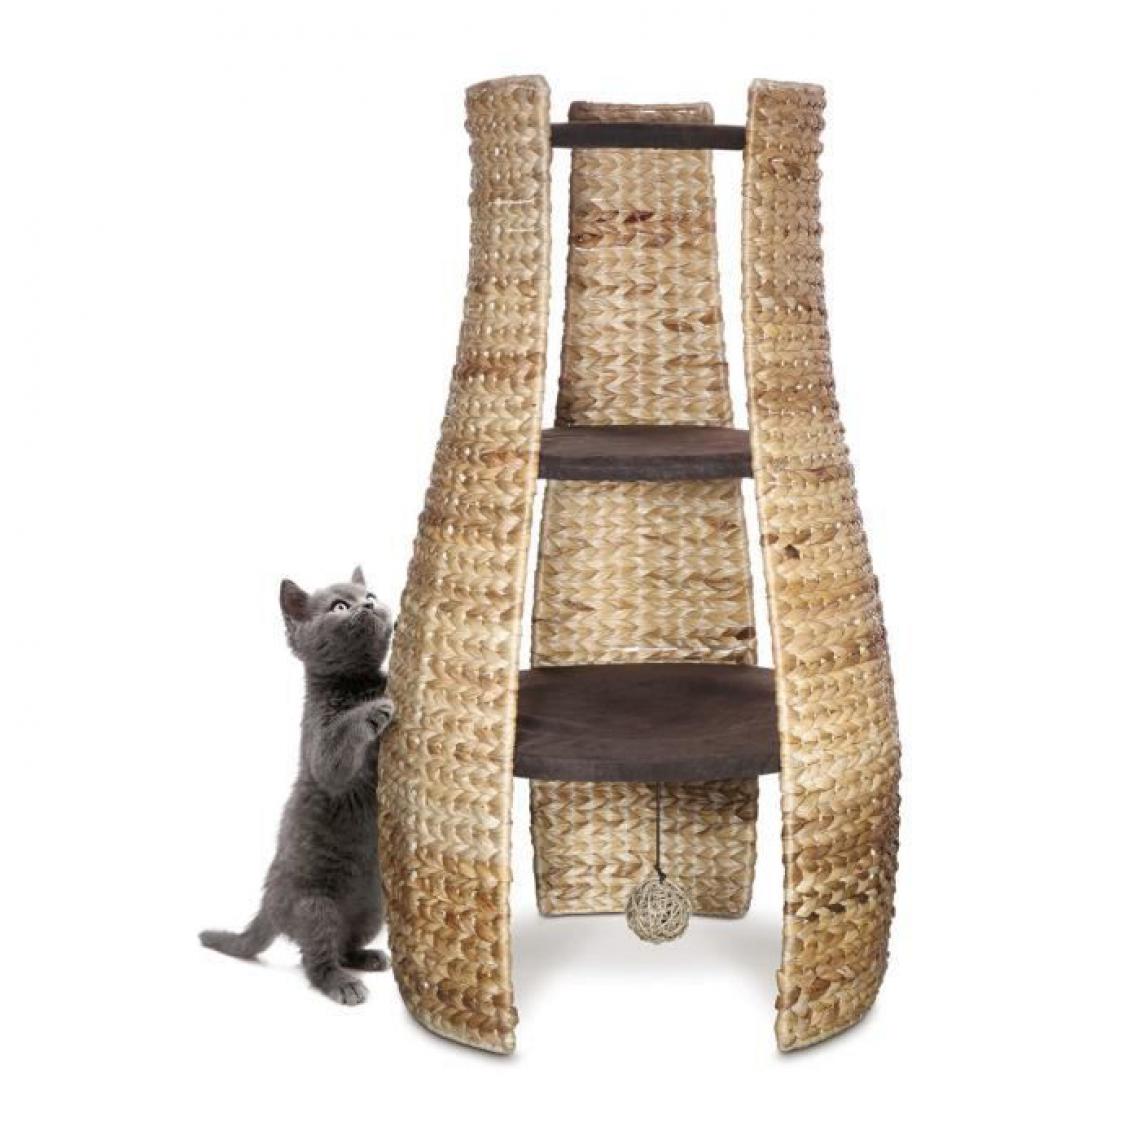 Icaverne - ARBRE A CHAT CATIT Refuge a 3 étages Design Home - Arbre à chat